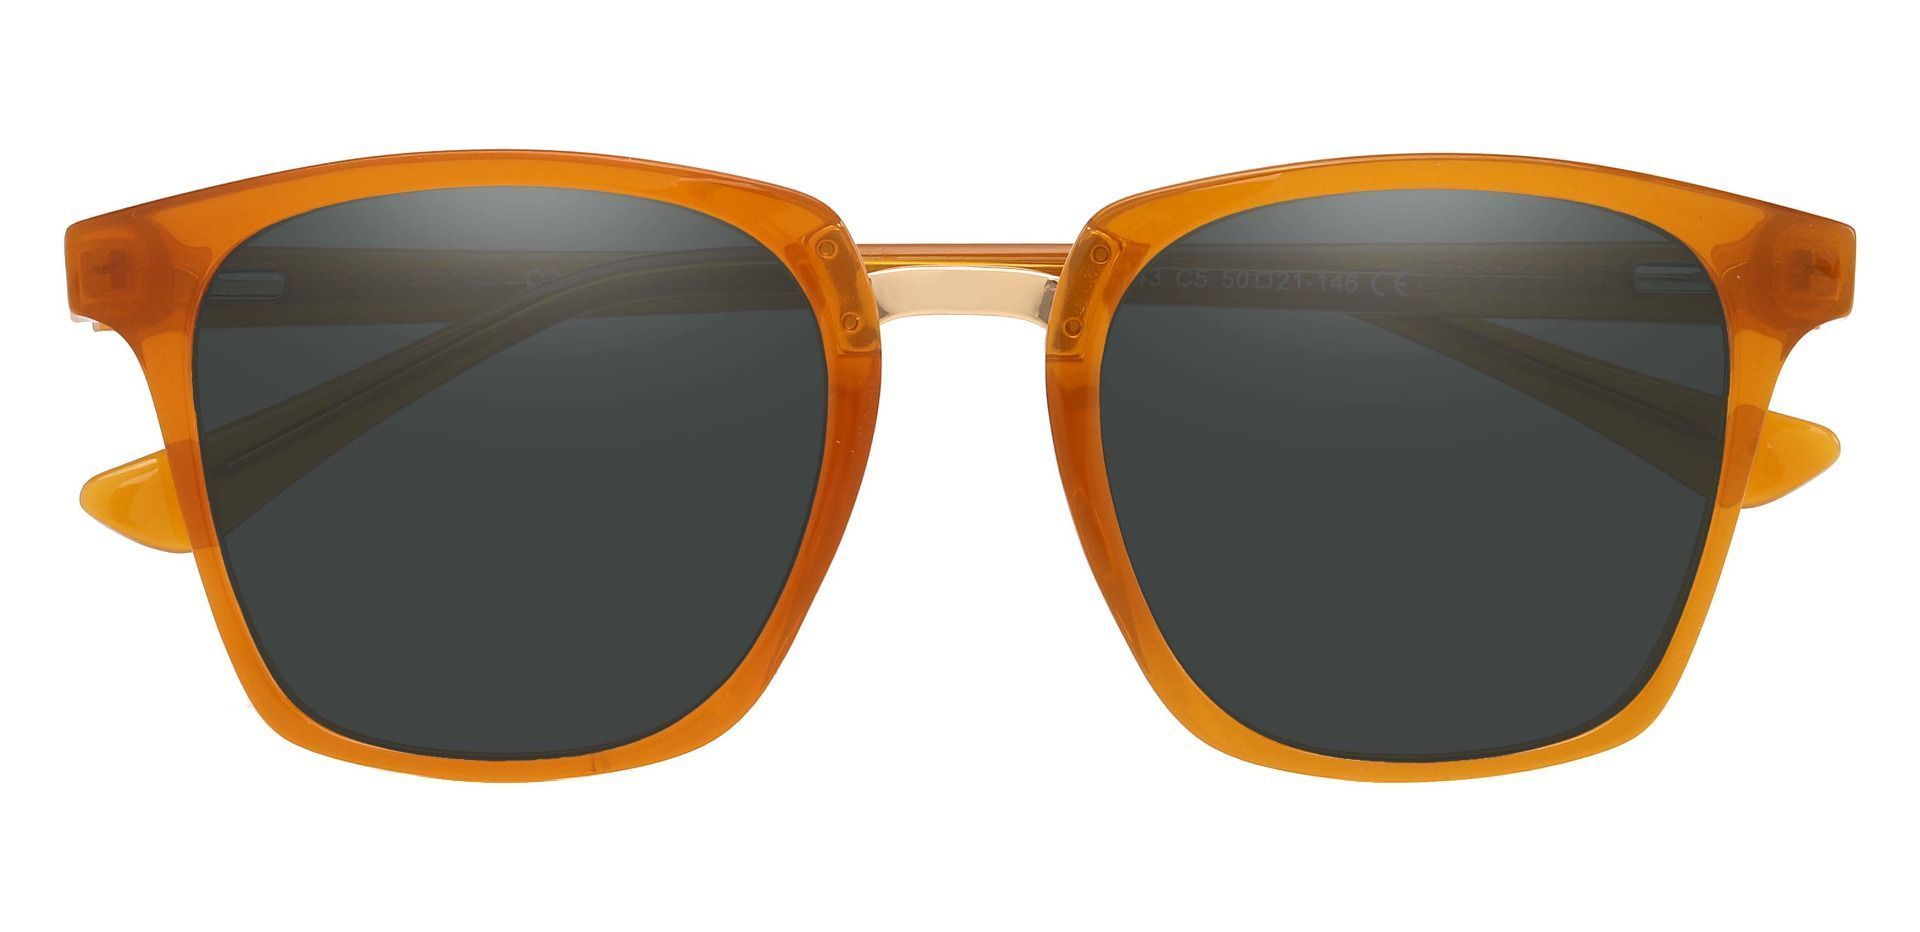 Delta Square Prescription Sunglasses - Orange Frame With Gray Lenses